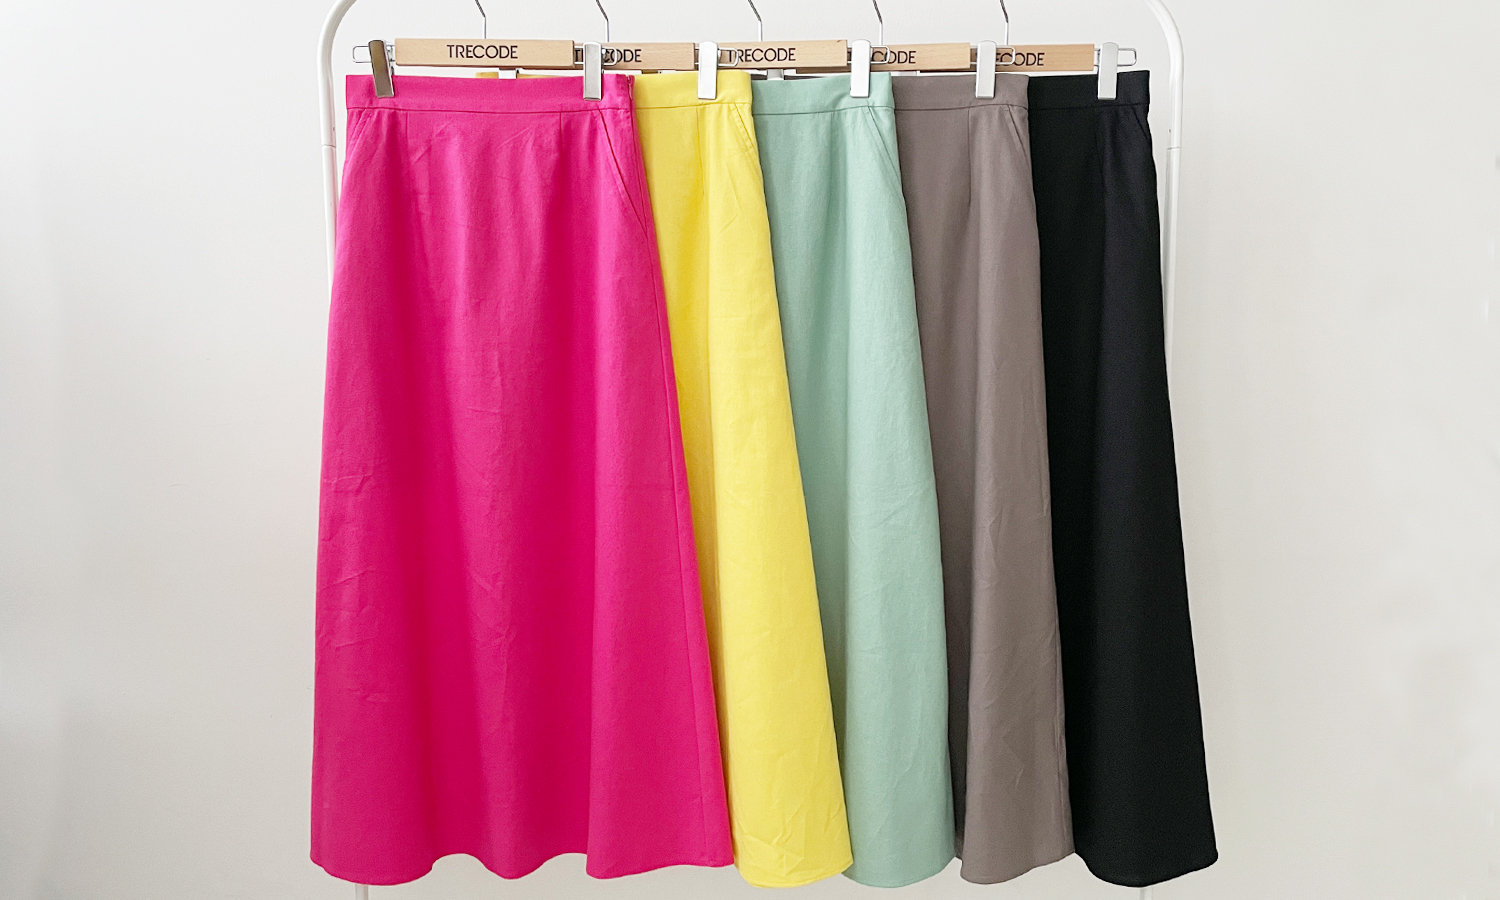 ピンク、イエロー、グリーン、チャコール、ブラックと、鮮やかなカラーからペーシックな色まで、5色展開のトレコードのリネン混Aラインスカート